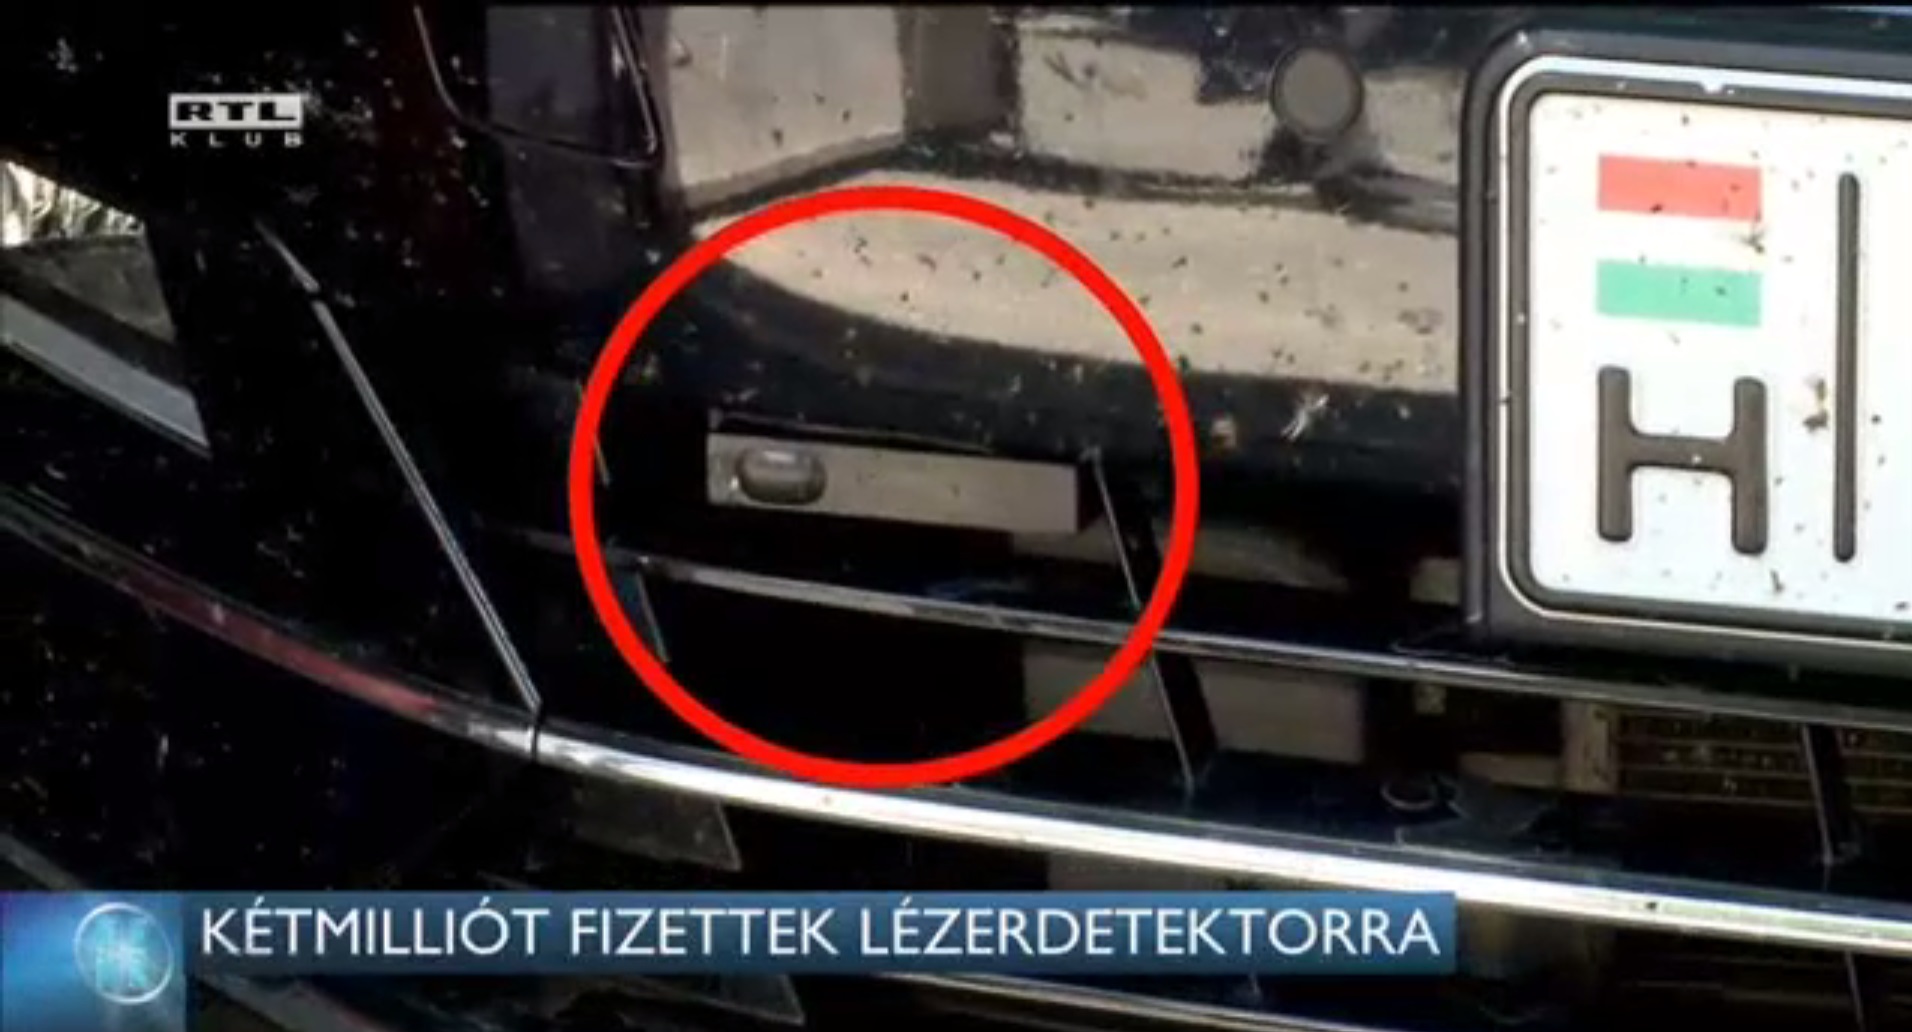 A debreceni önkormányzat kétmillióért vett lézerdetektorokat, de azt állítják, csak parkolni akarnak velük